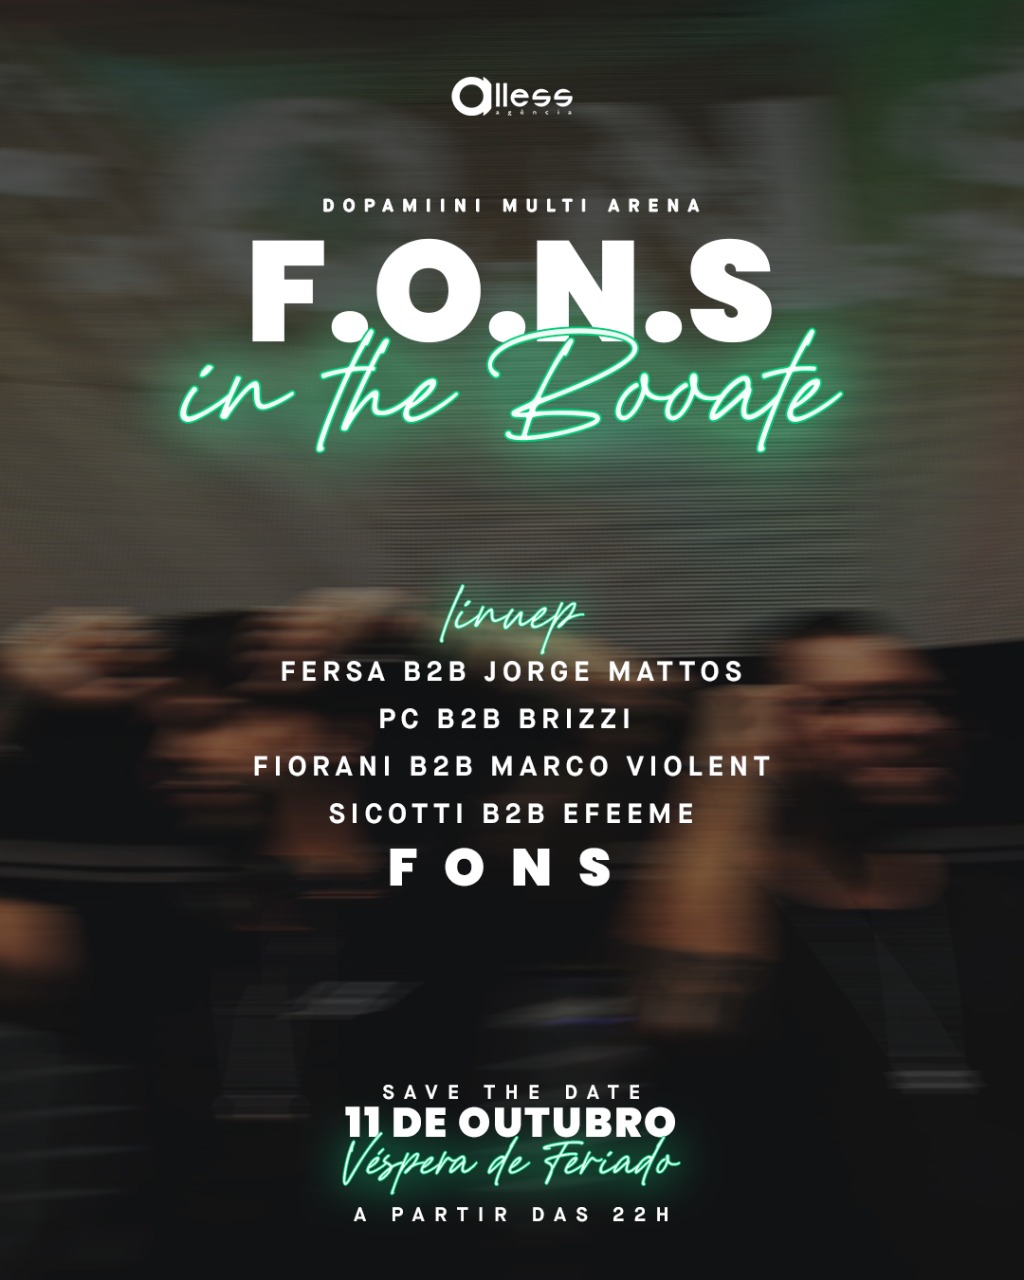 Alless Agência: F.O.N.S  IN THE BOOATE 